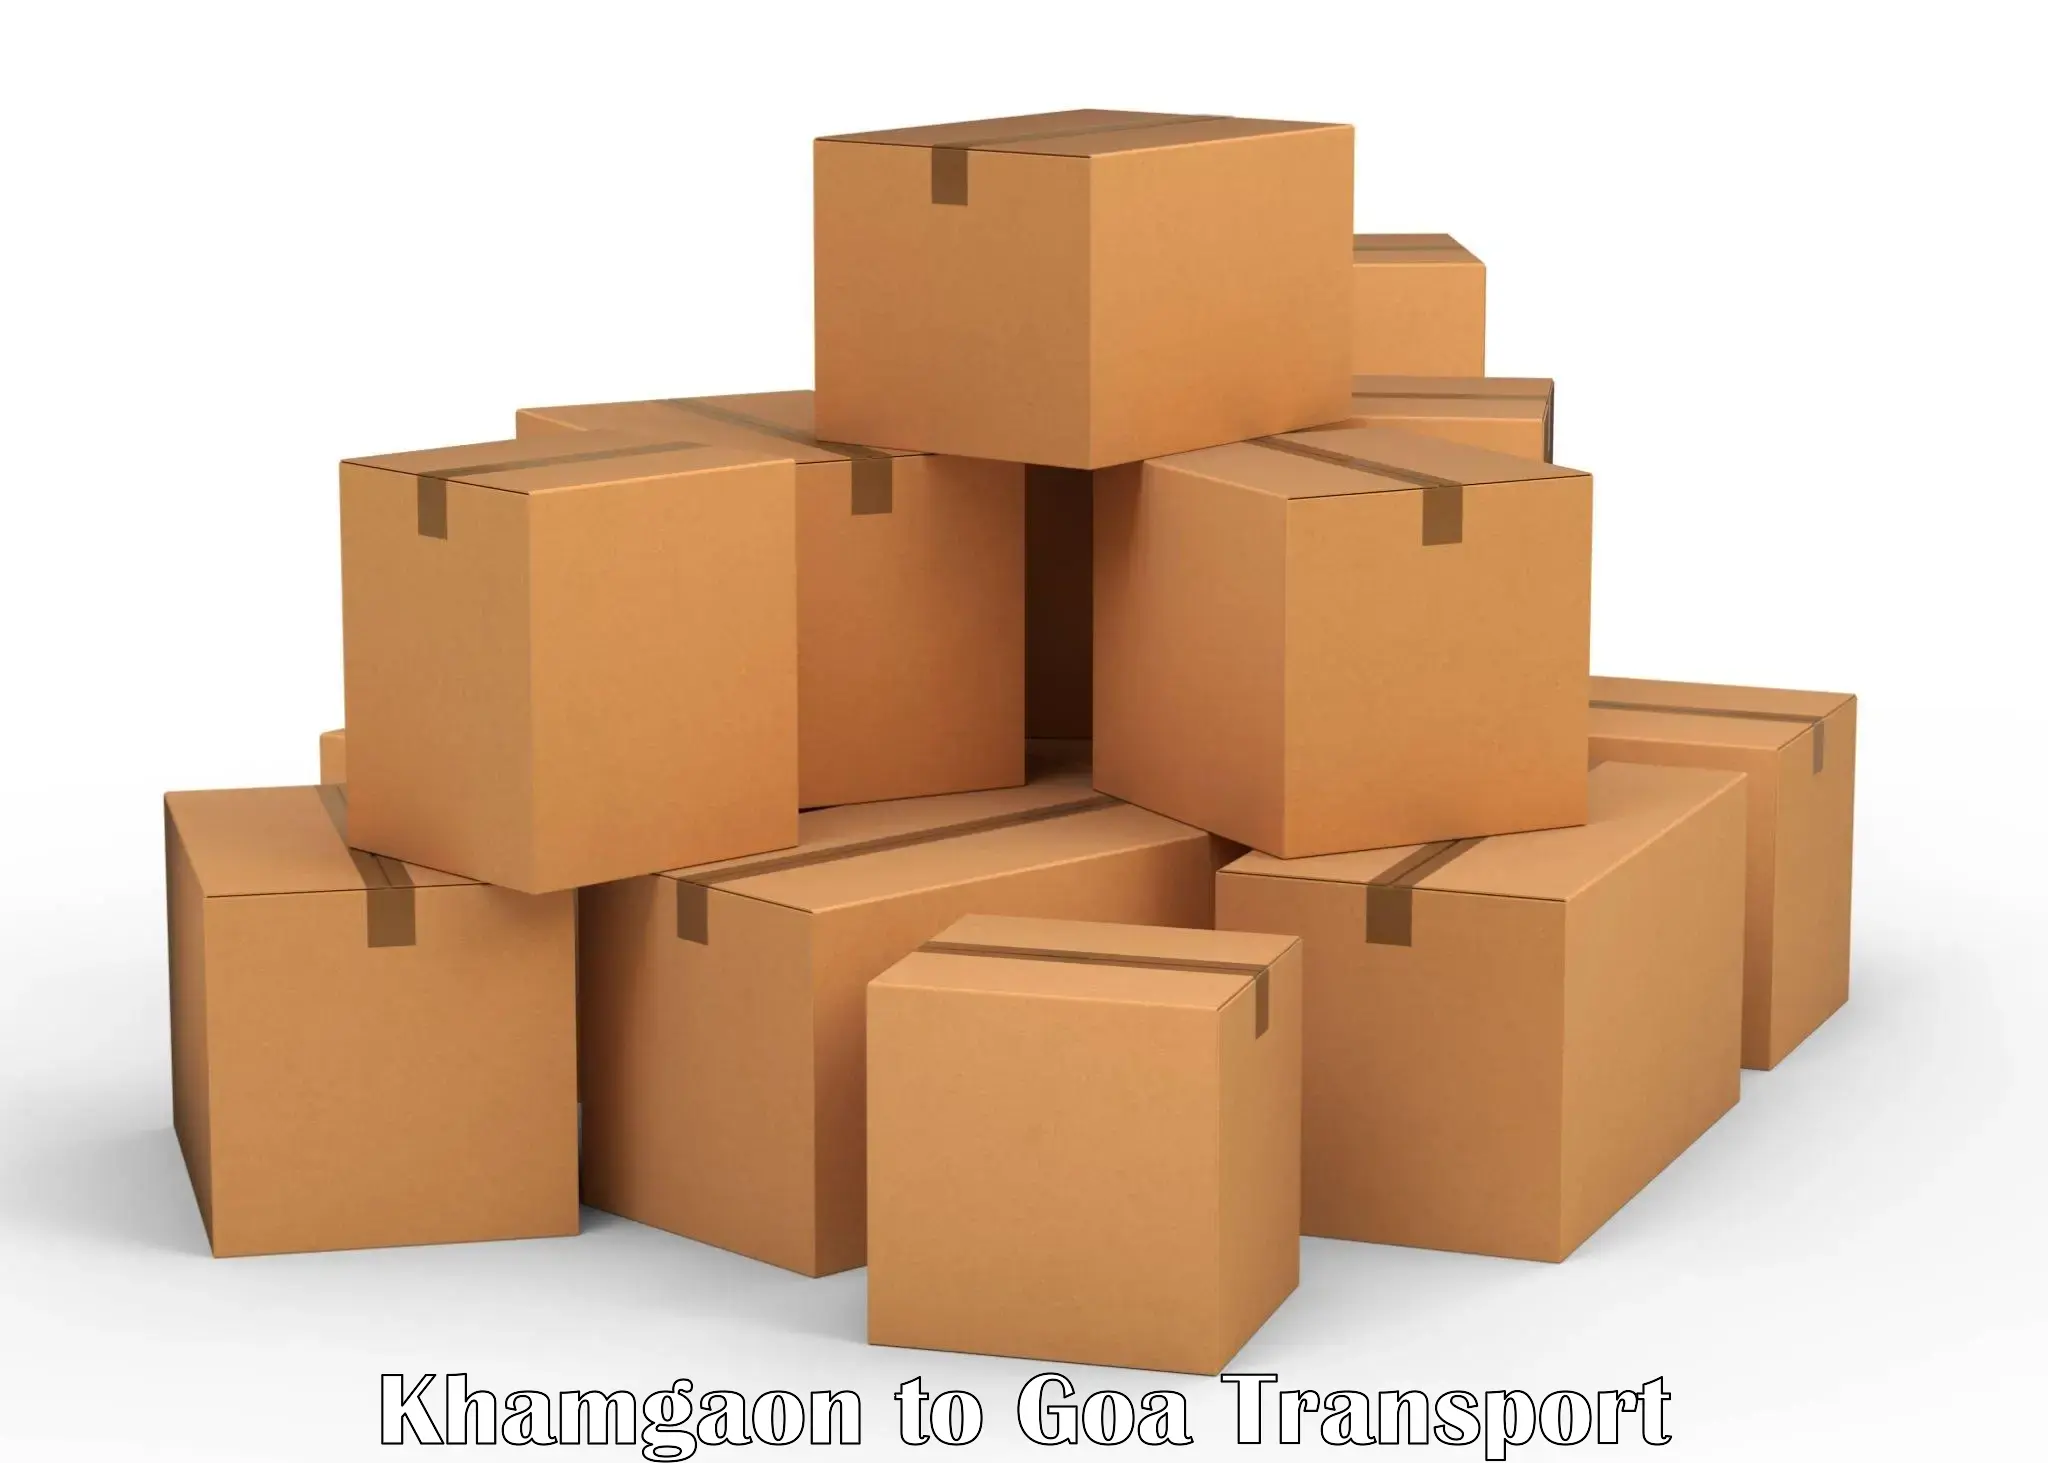 Delivery service Khamgaon to Mormugao Port